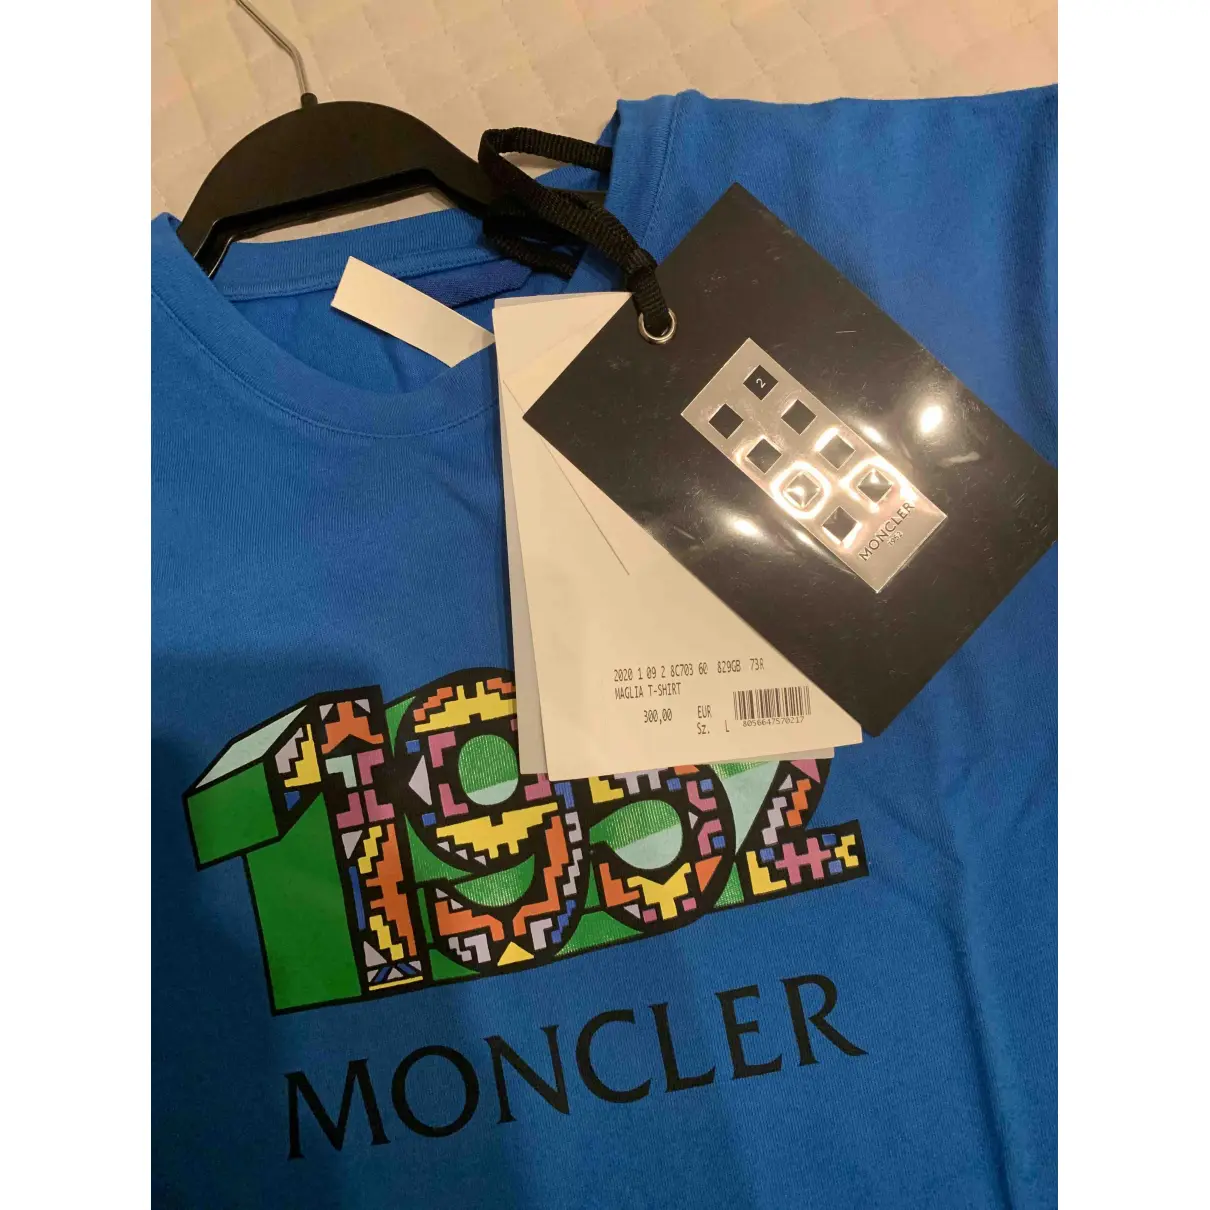 Moncler n°2 1952 + Valextra t-shirt Moncler Genius